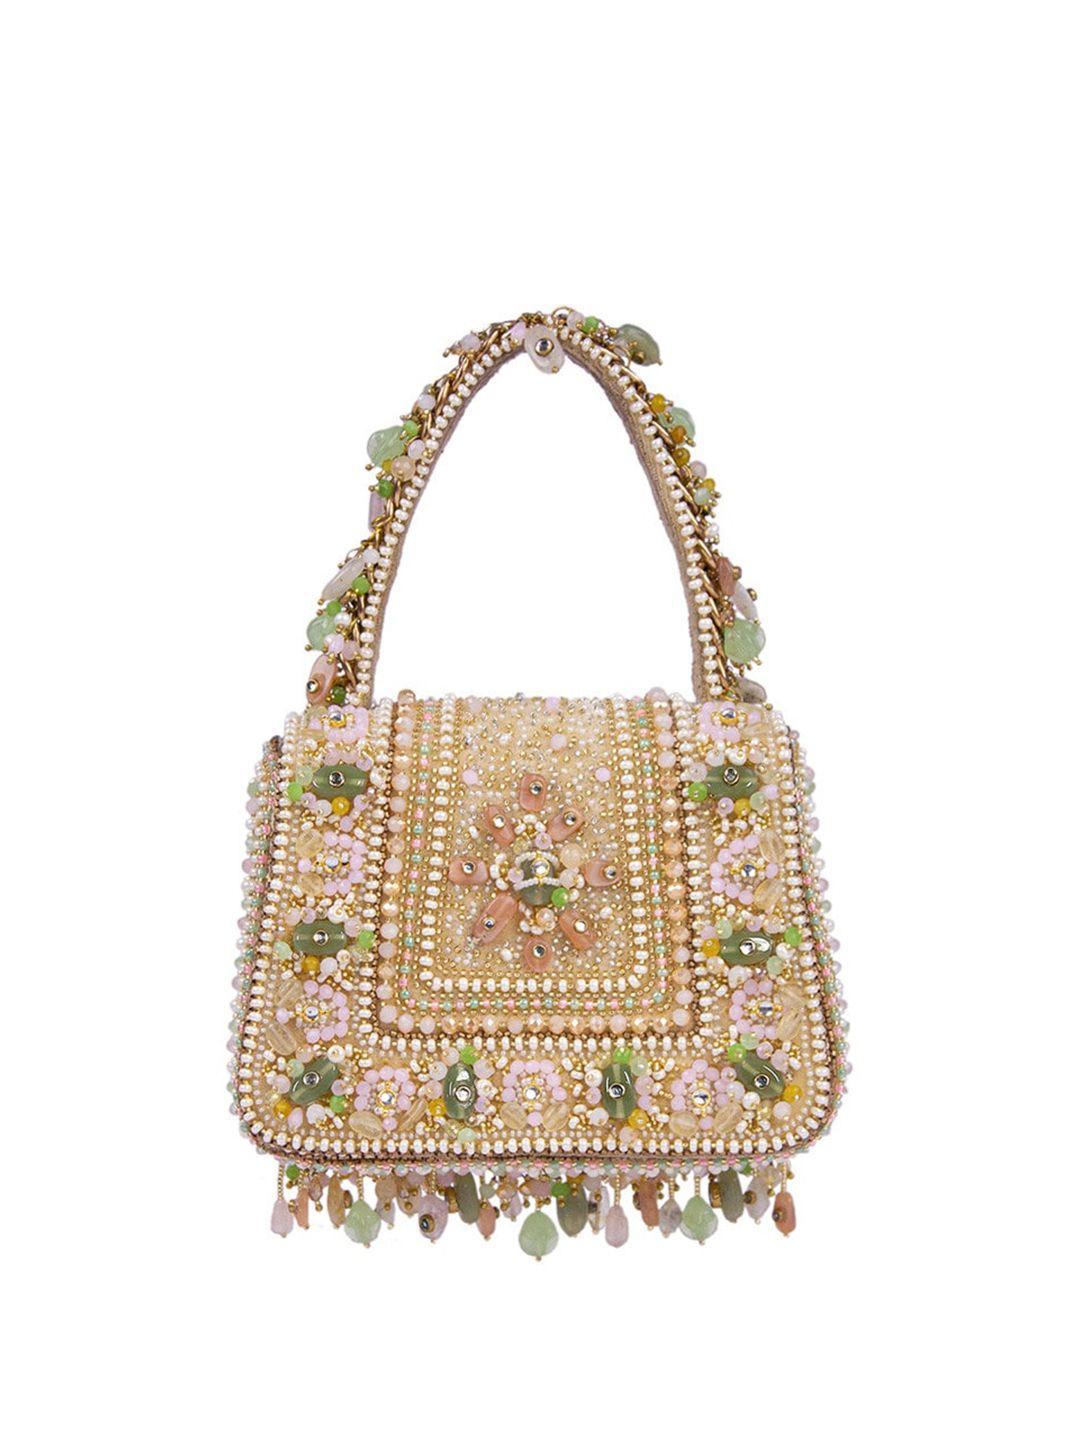 lovetobag embellished purse